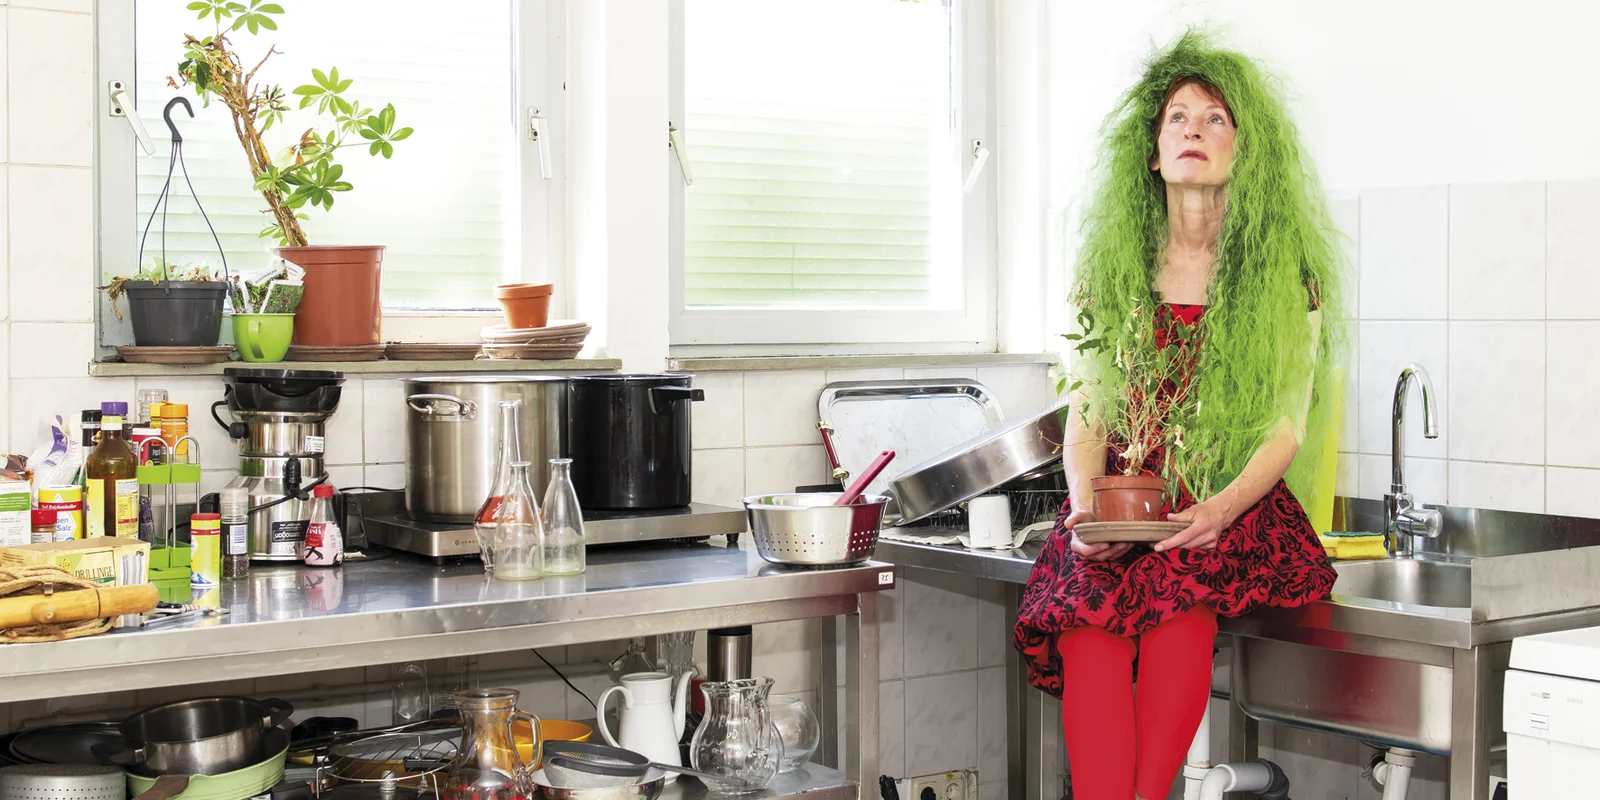 Franziska Aeschlimann sitzt auf einer Edelstahlspüle in einer Küche neben einem vollgestellten Etagenwagen. In der Hand hält sie eine Zimmerpflanze auf dem Kopf hat sie eine Perücke mit langen wilden grünen Haaren.